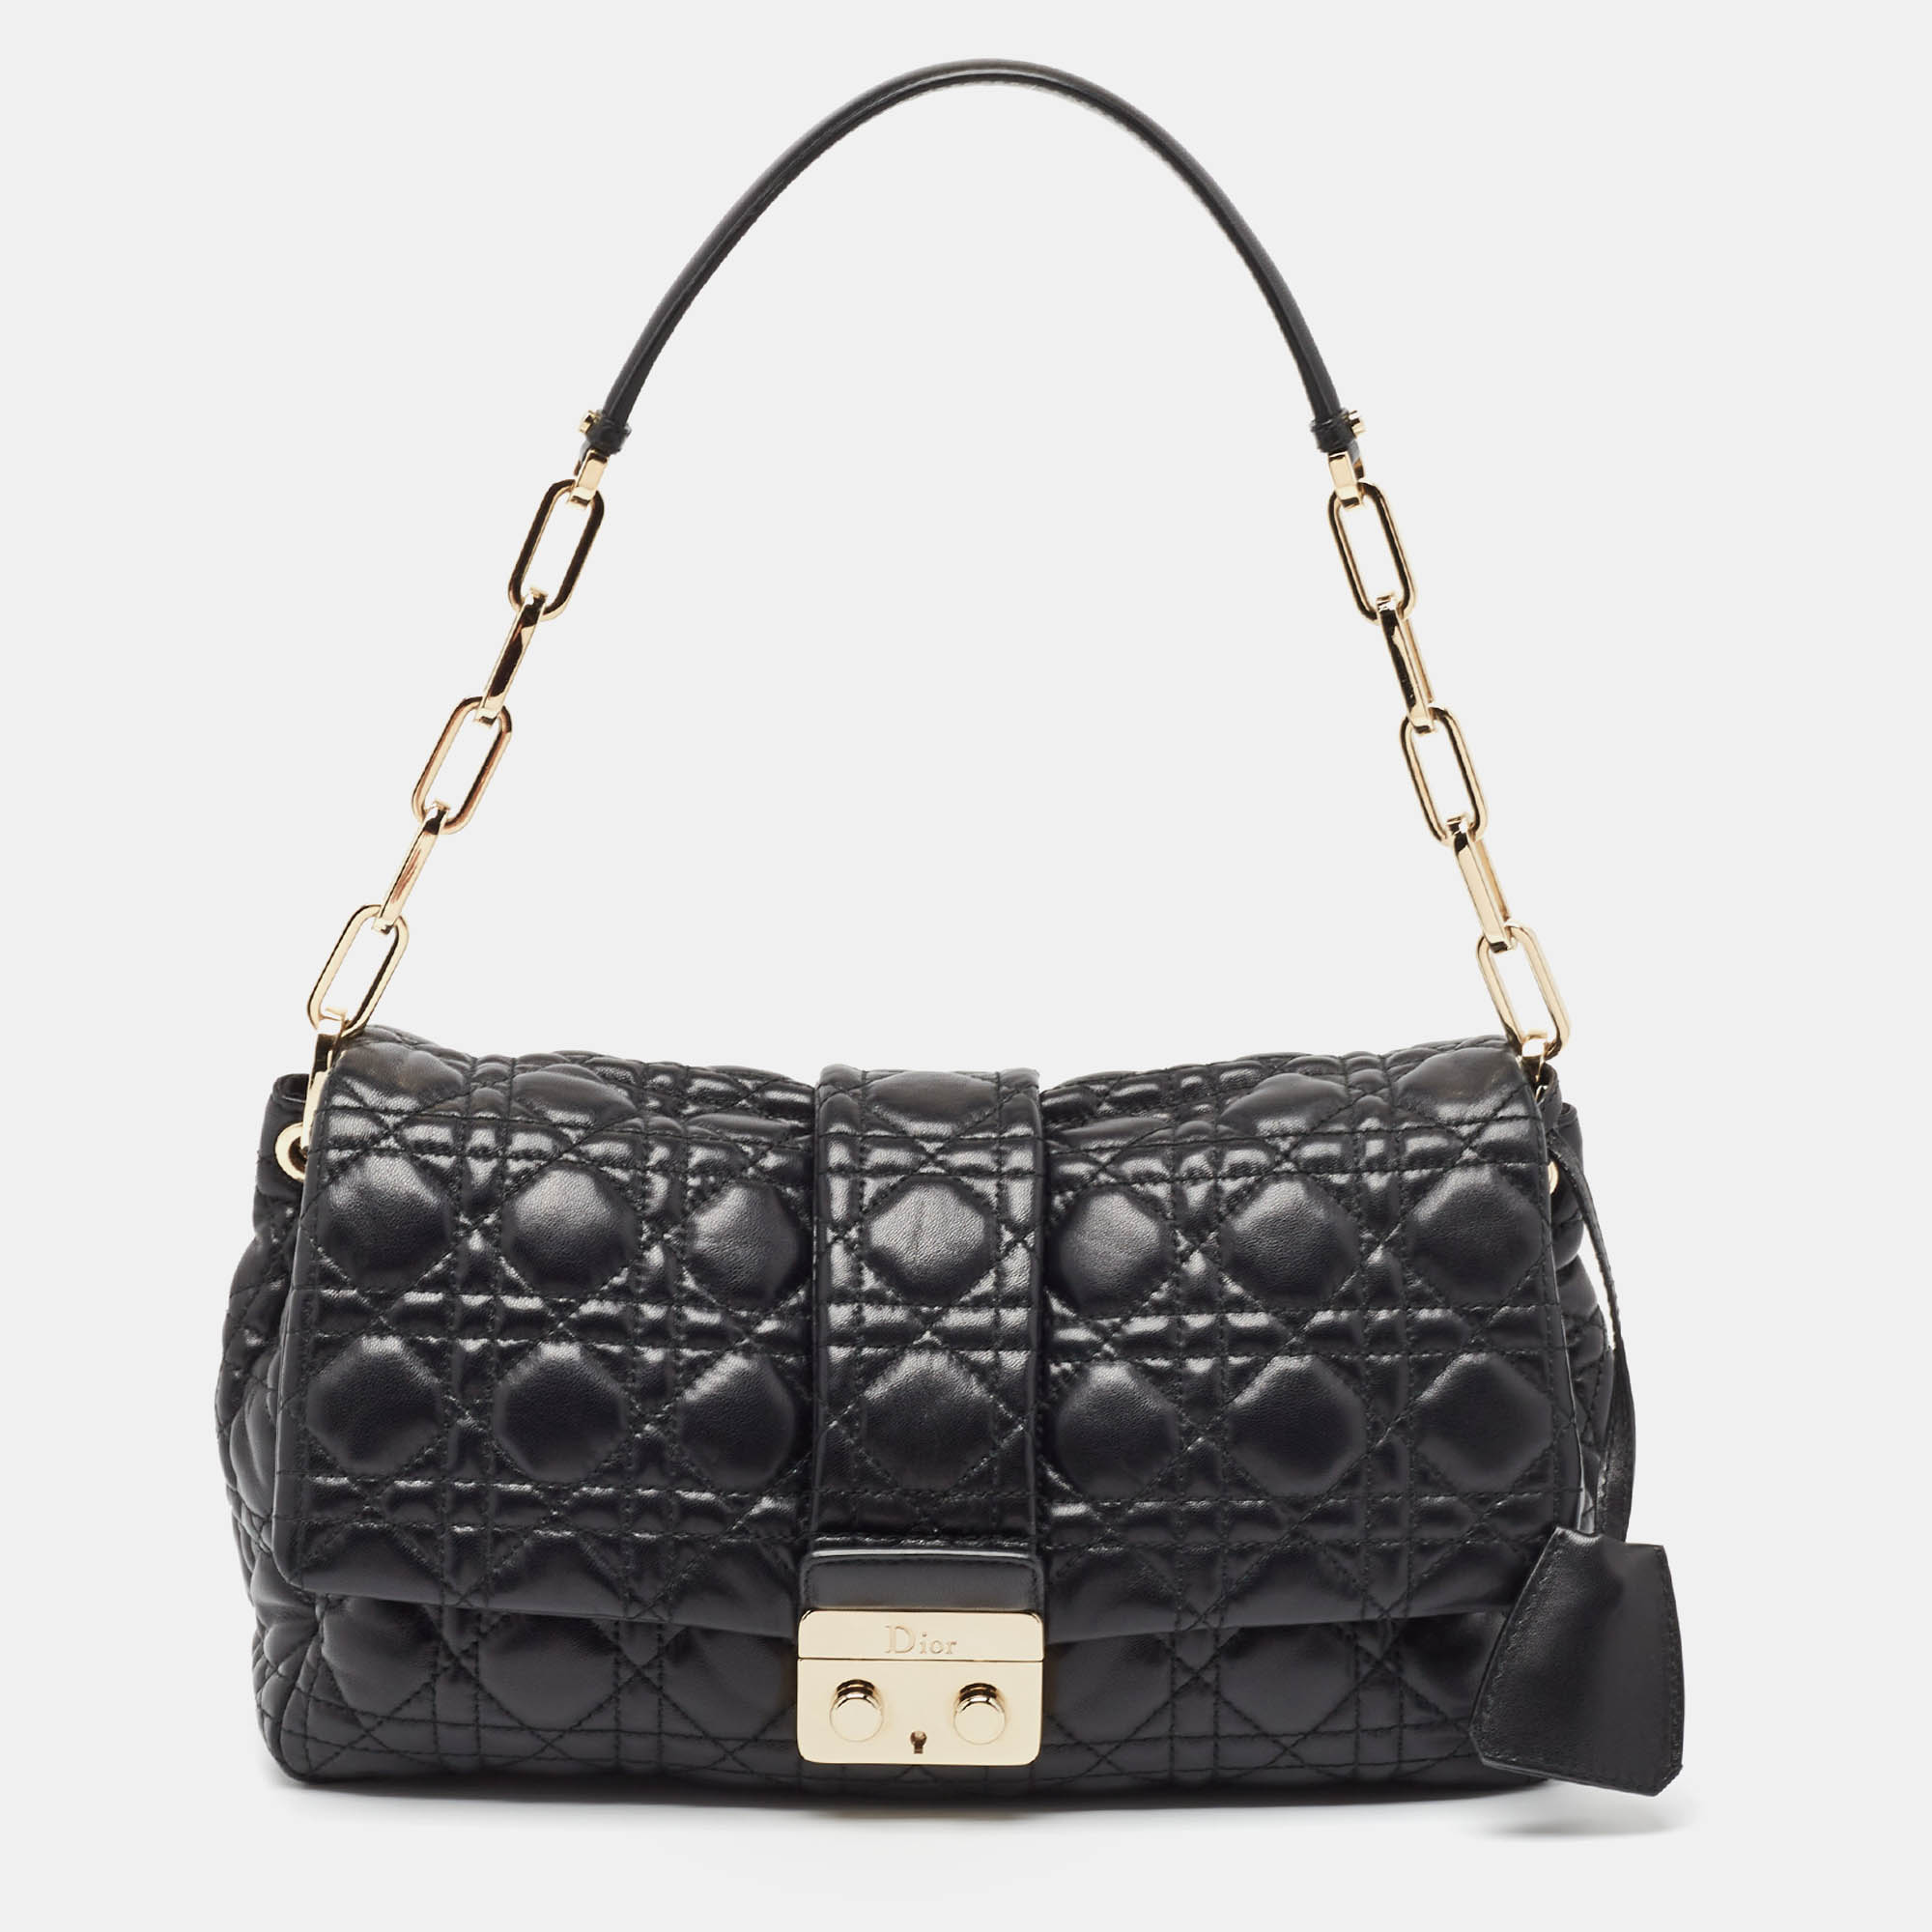 Dior black cannage leather miss dior shoulder bag